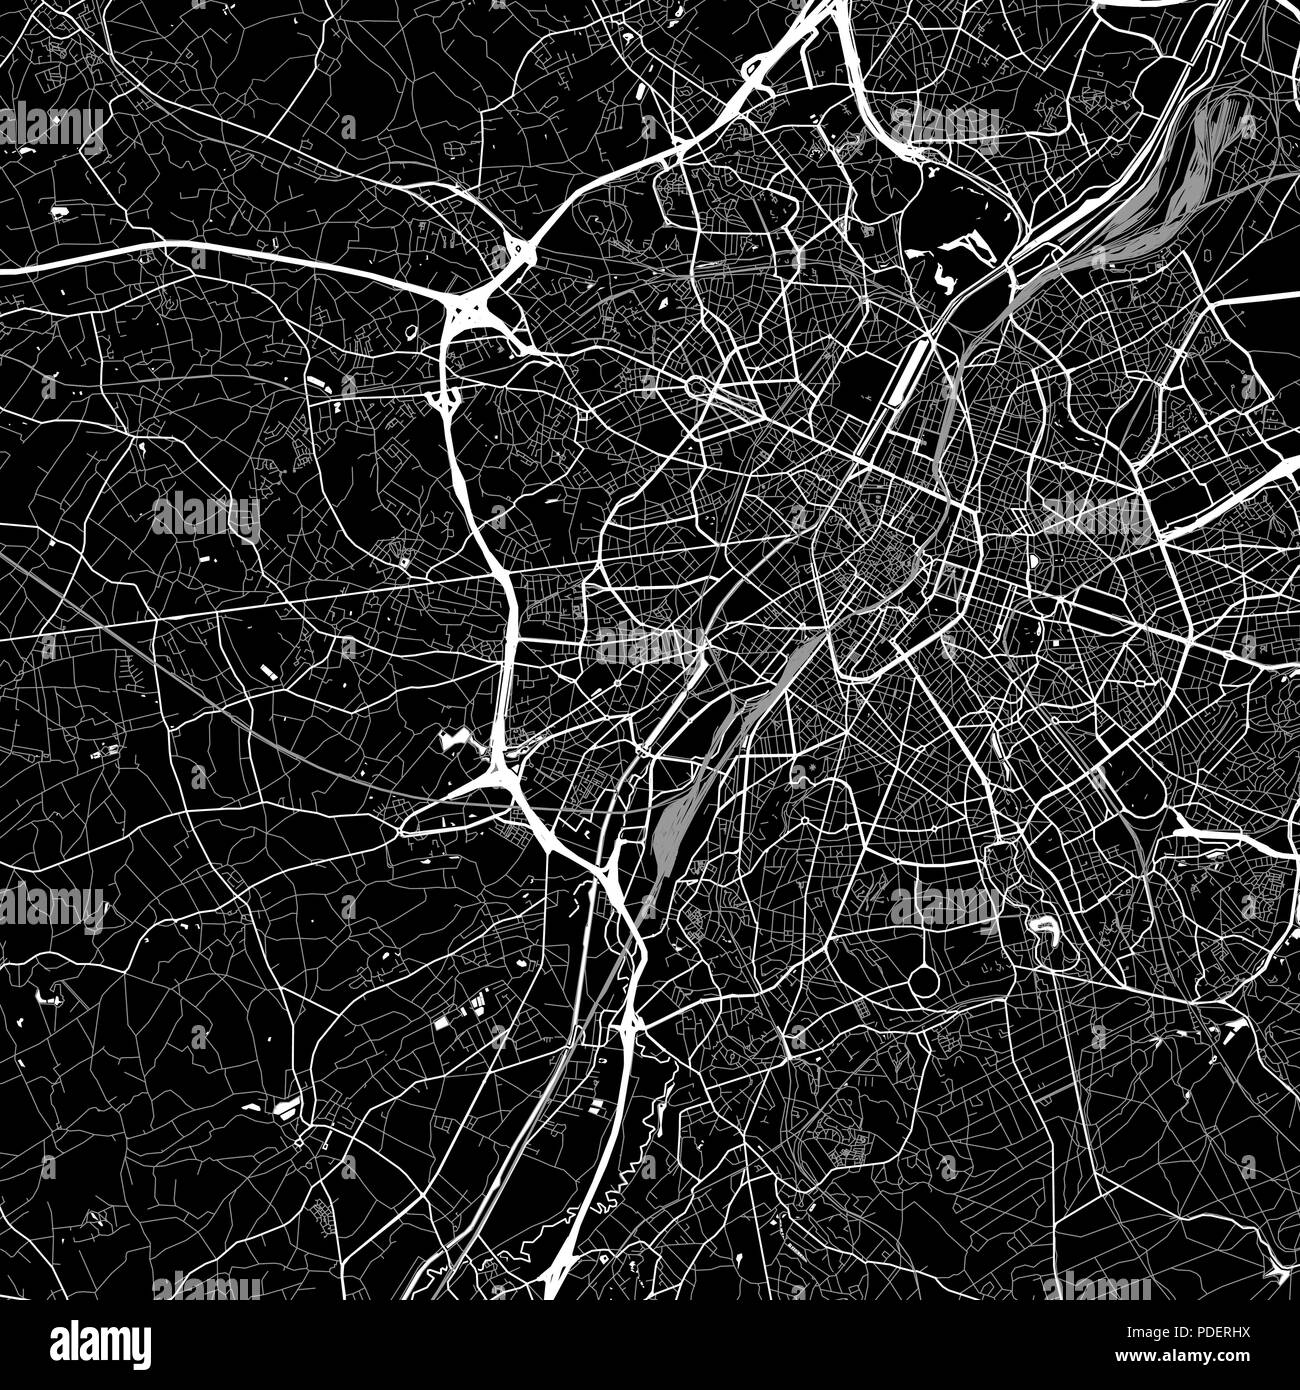 Lageplan von Anderlecht, Belgien. Der dunkle Hintergrund Version für Infografik und Marketing. Diese Karte von Anderlecht, Region Brüssel-Hauptstadt, enthält st Stock Vektor